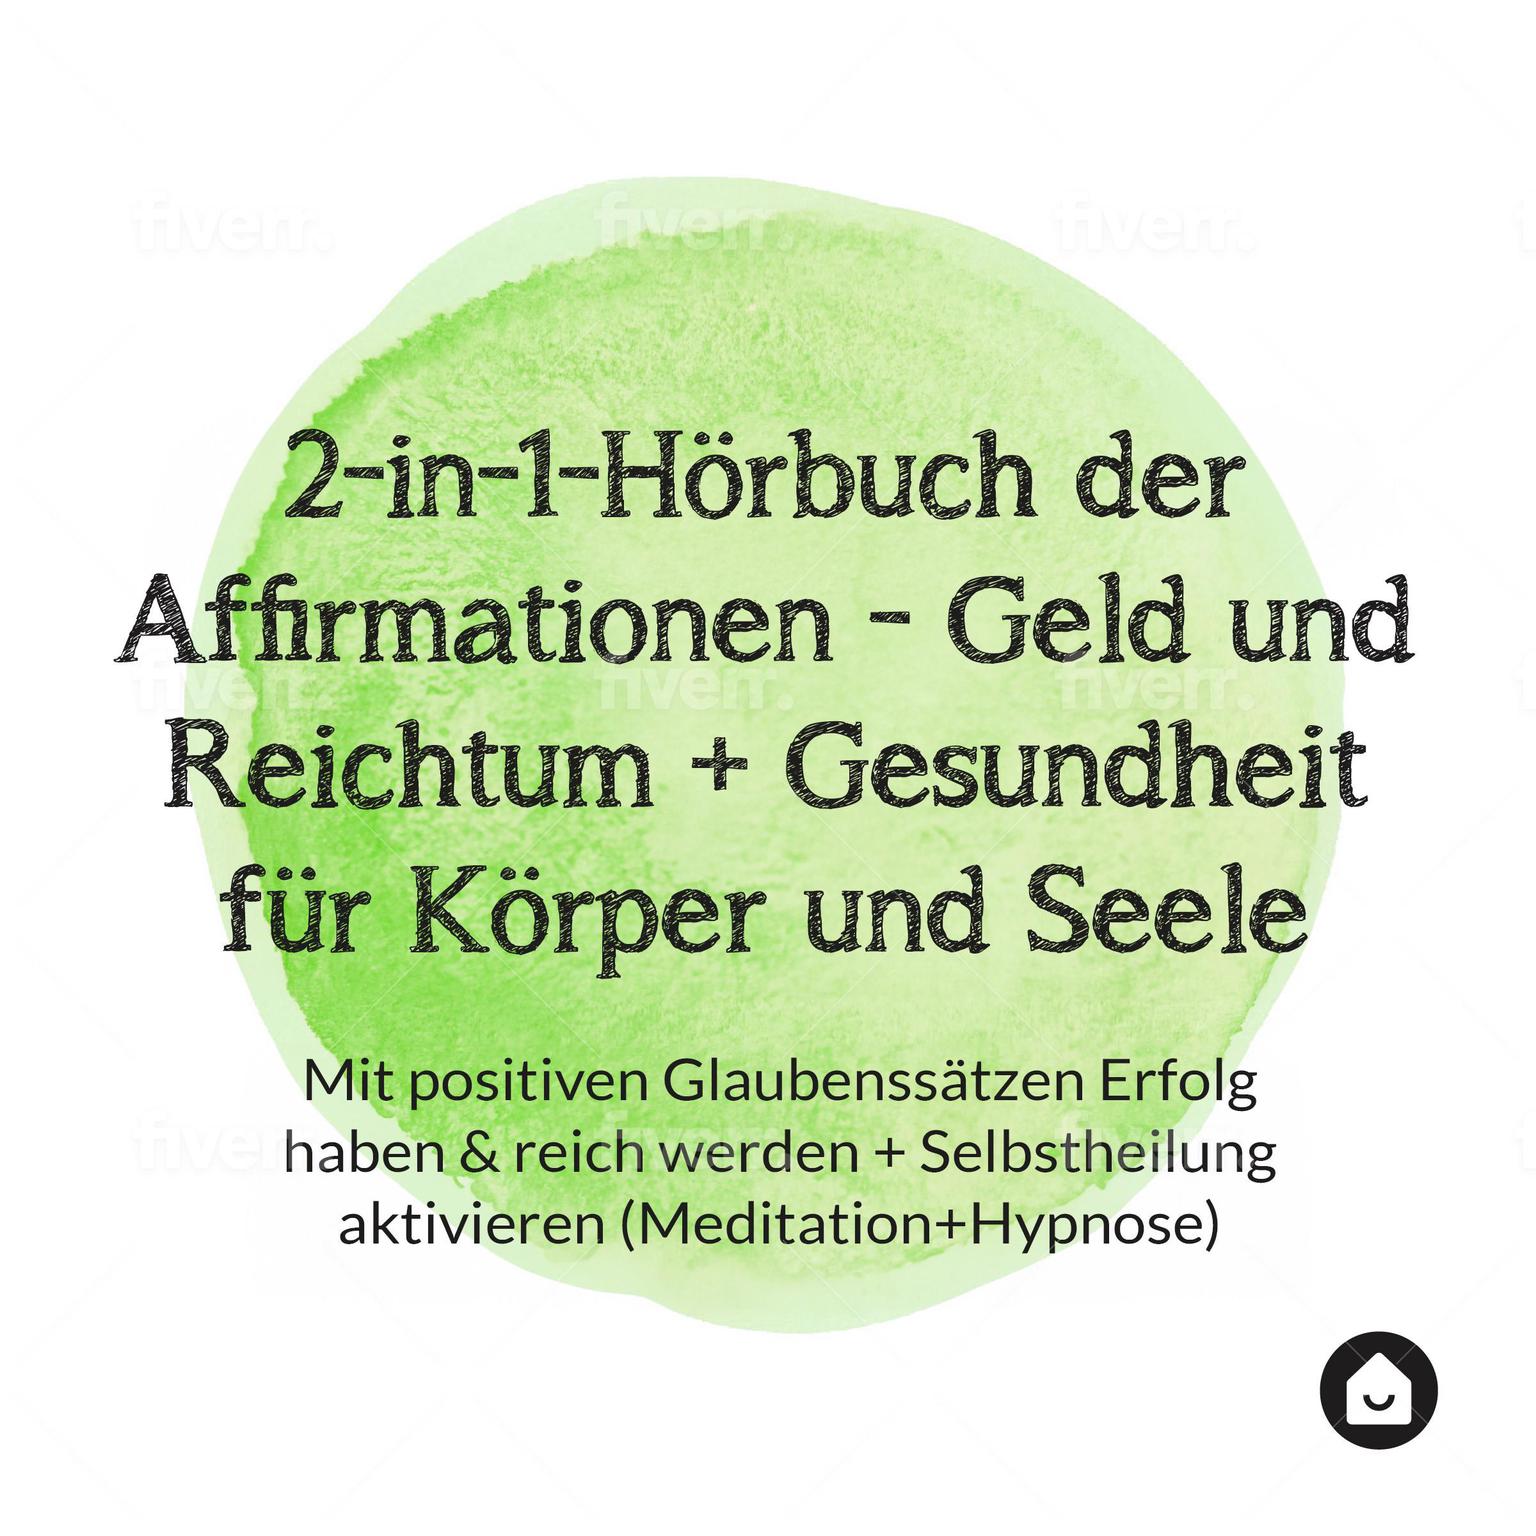 2-in-1-Hörbuch der Affirmationen - Geld und Reichtum + Gesundheit für Körper und Seele Audiobook, by Haus der Affirmationen